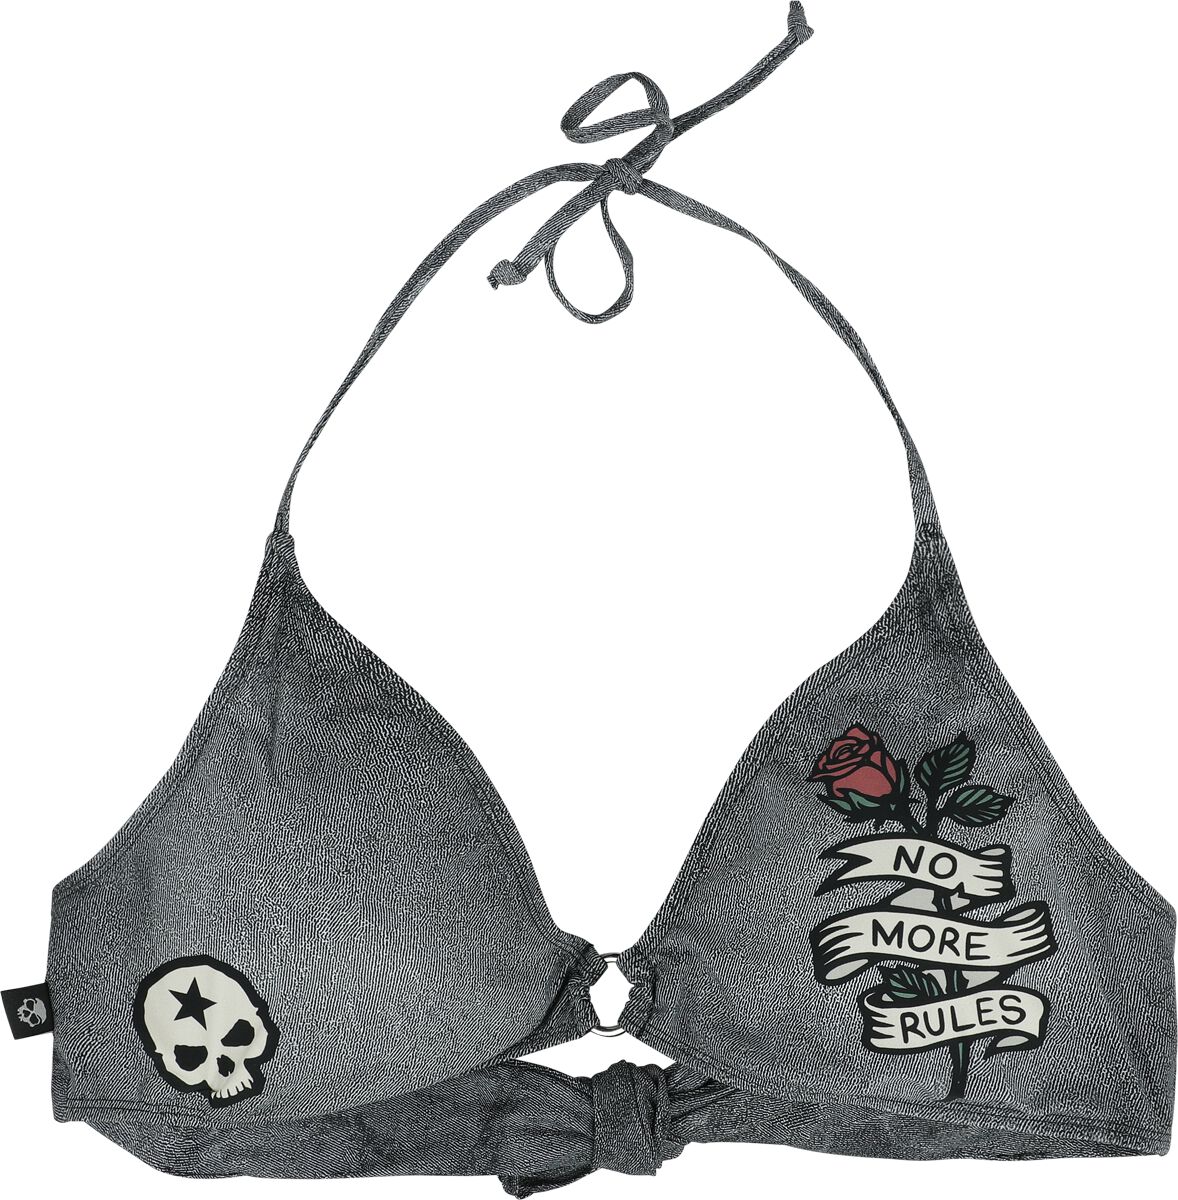 Image of Reggiseno bikini di Rock Rebel by EMP - Bikini Top With Old School Prints - M a XXL - Donna - grigio scuro/nero